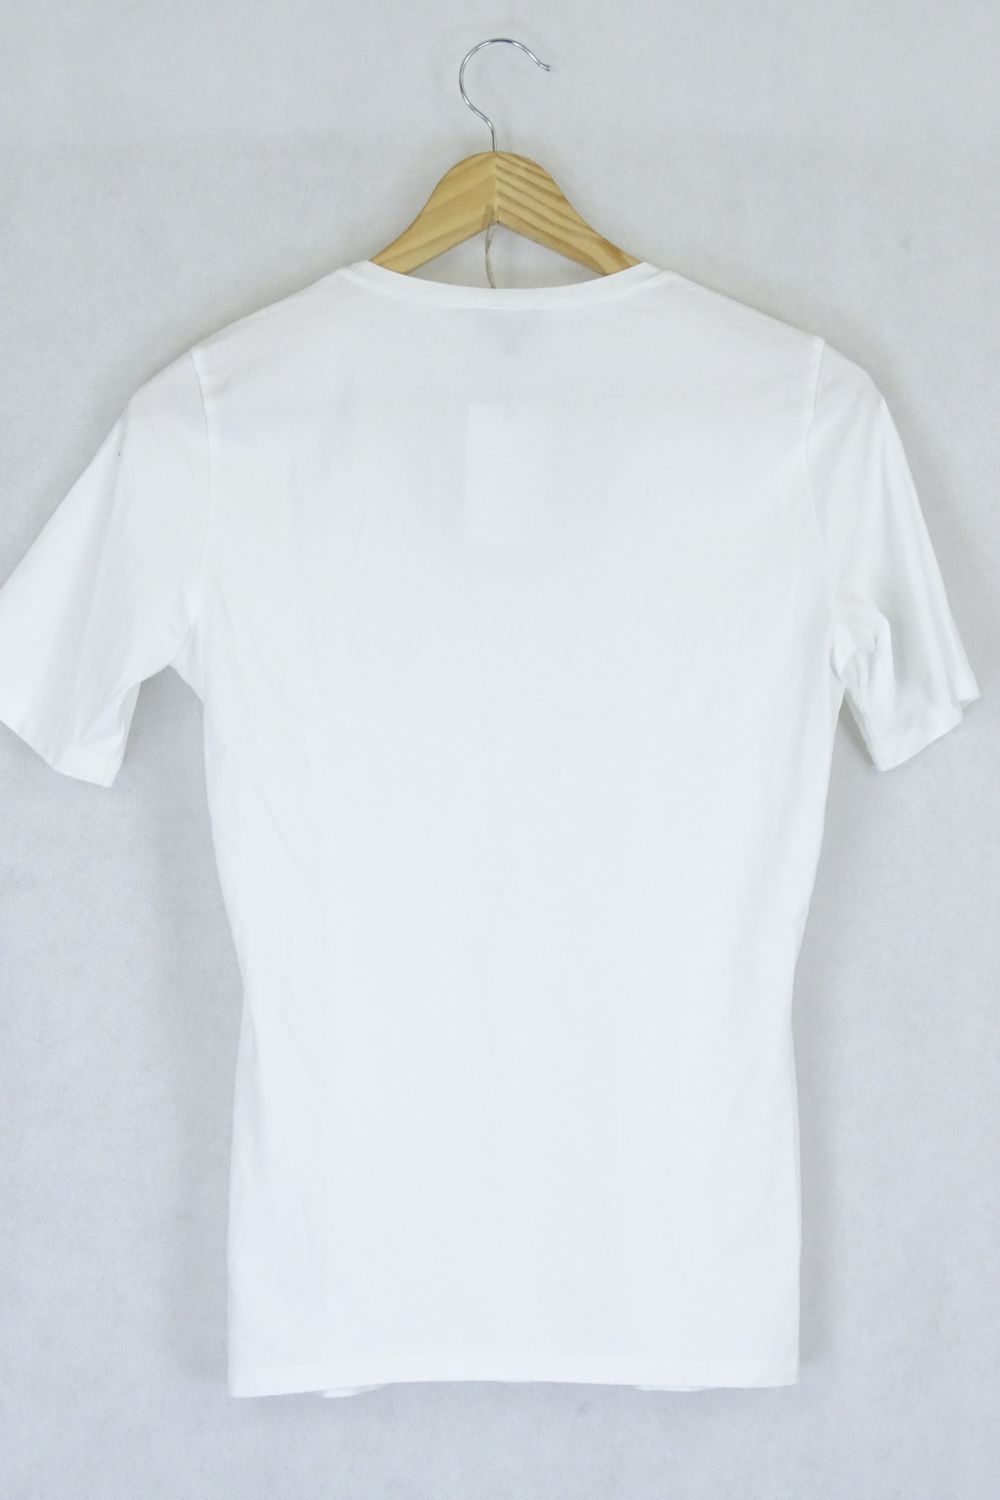 AJ -  Armani Jeans White T-Shirt S